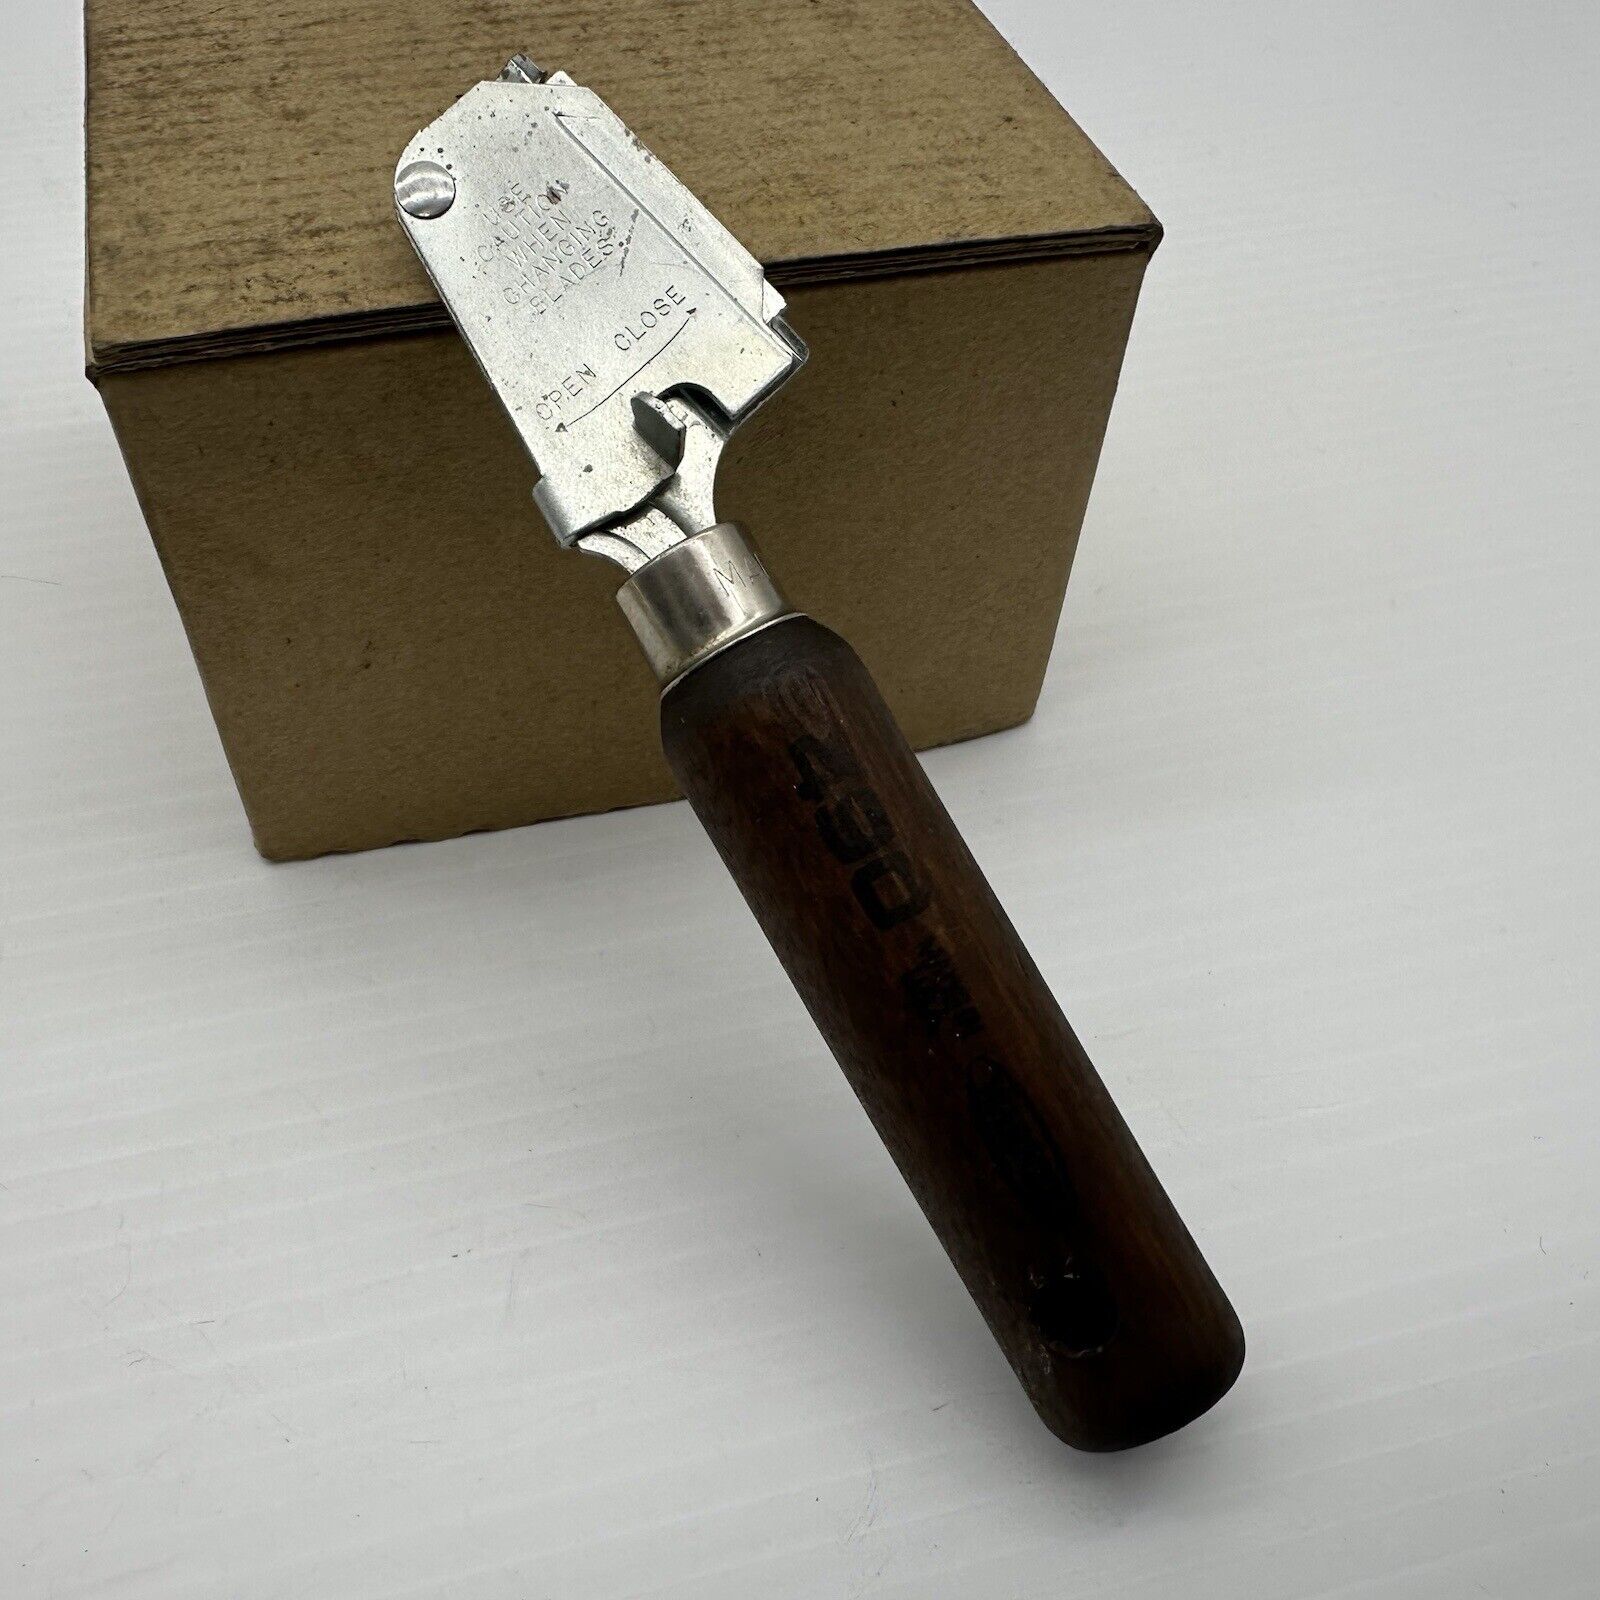  Vintage WARNER 490 Razor Knife Scraper Made in USA